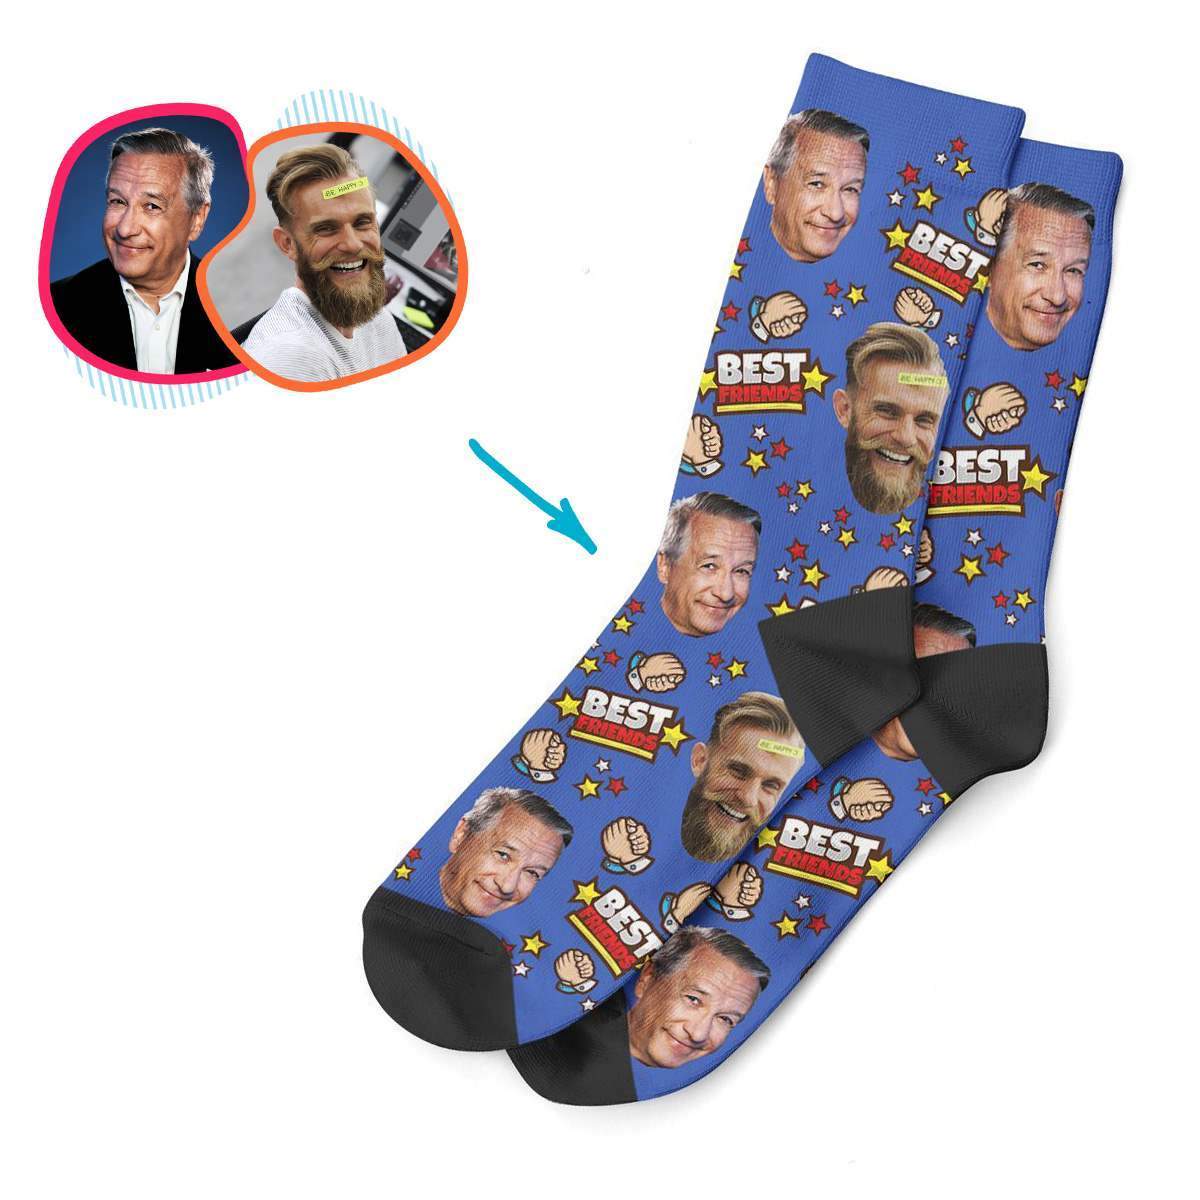 Best Friends Personalized Socks